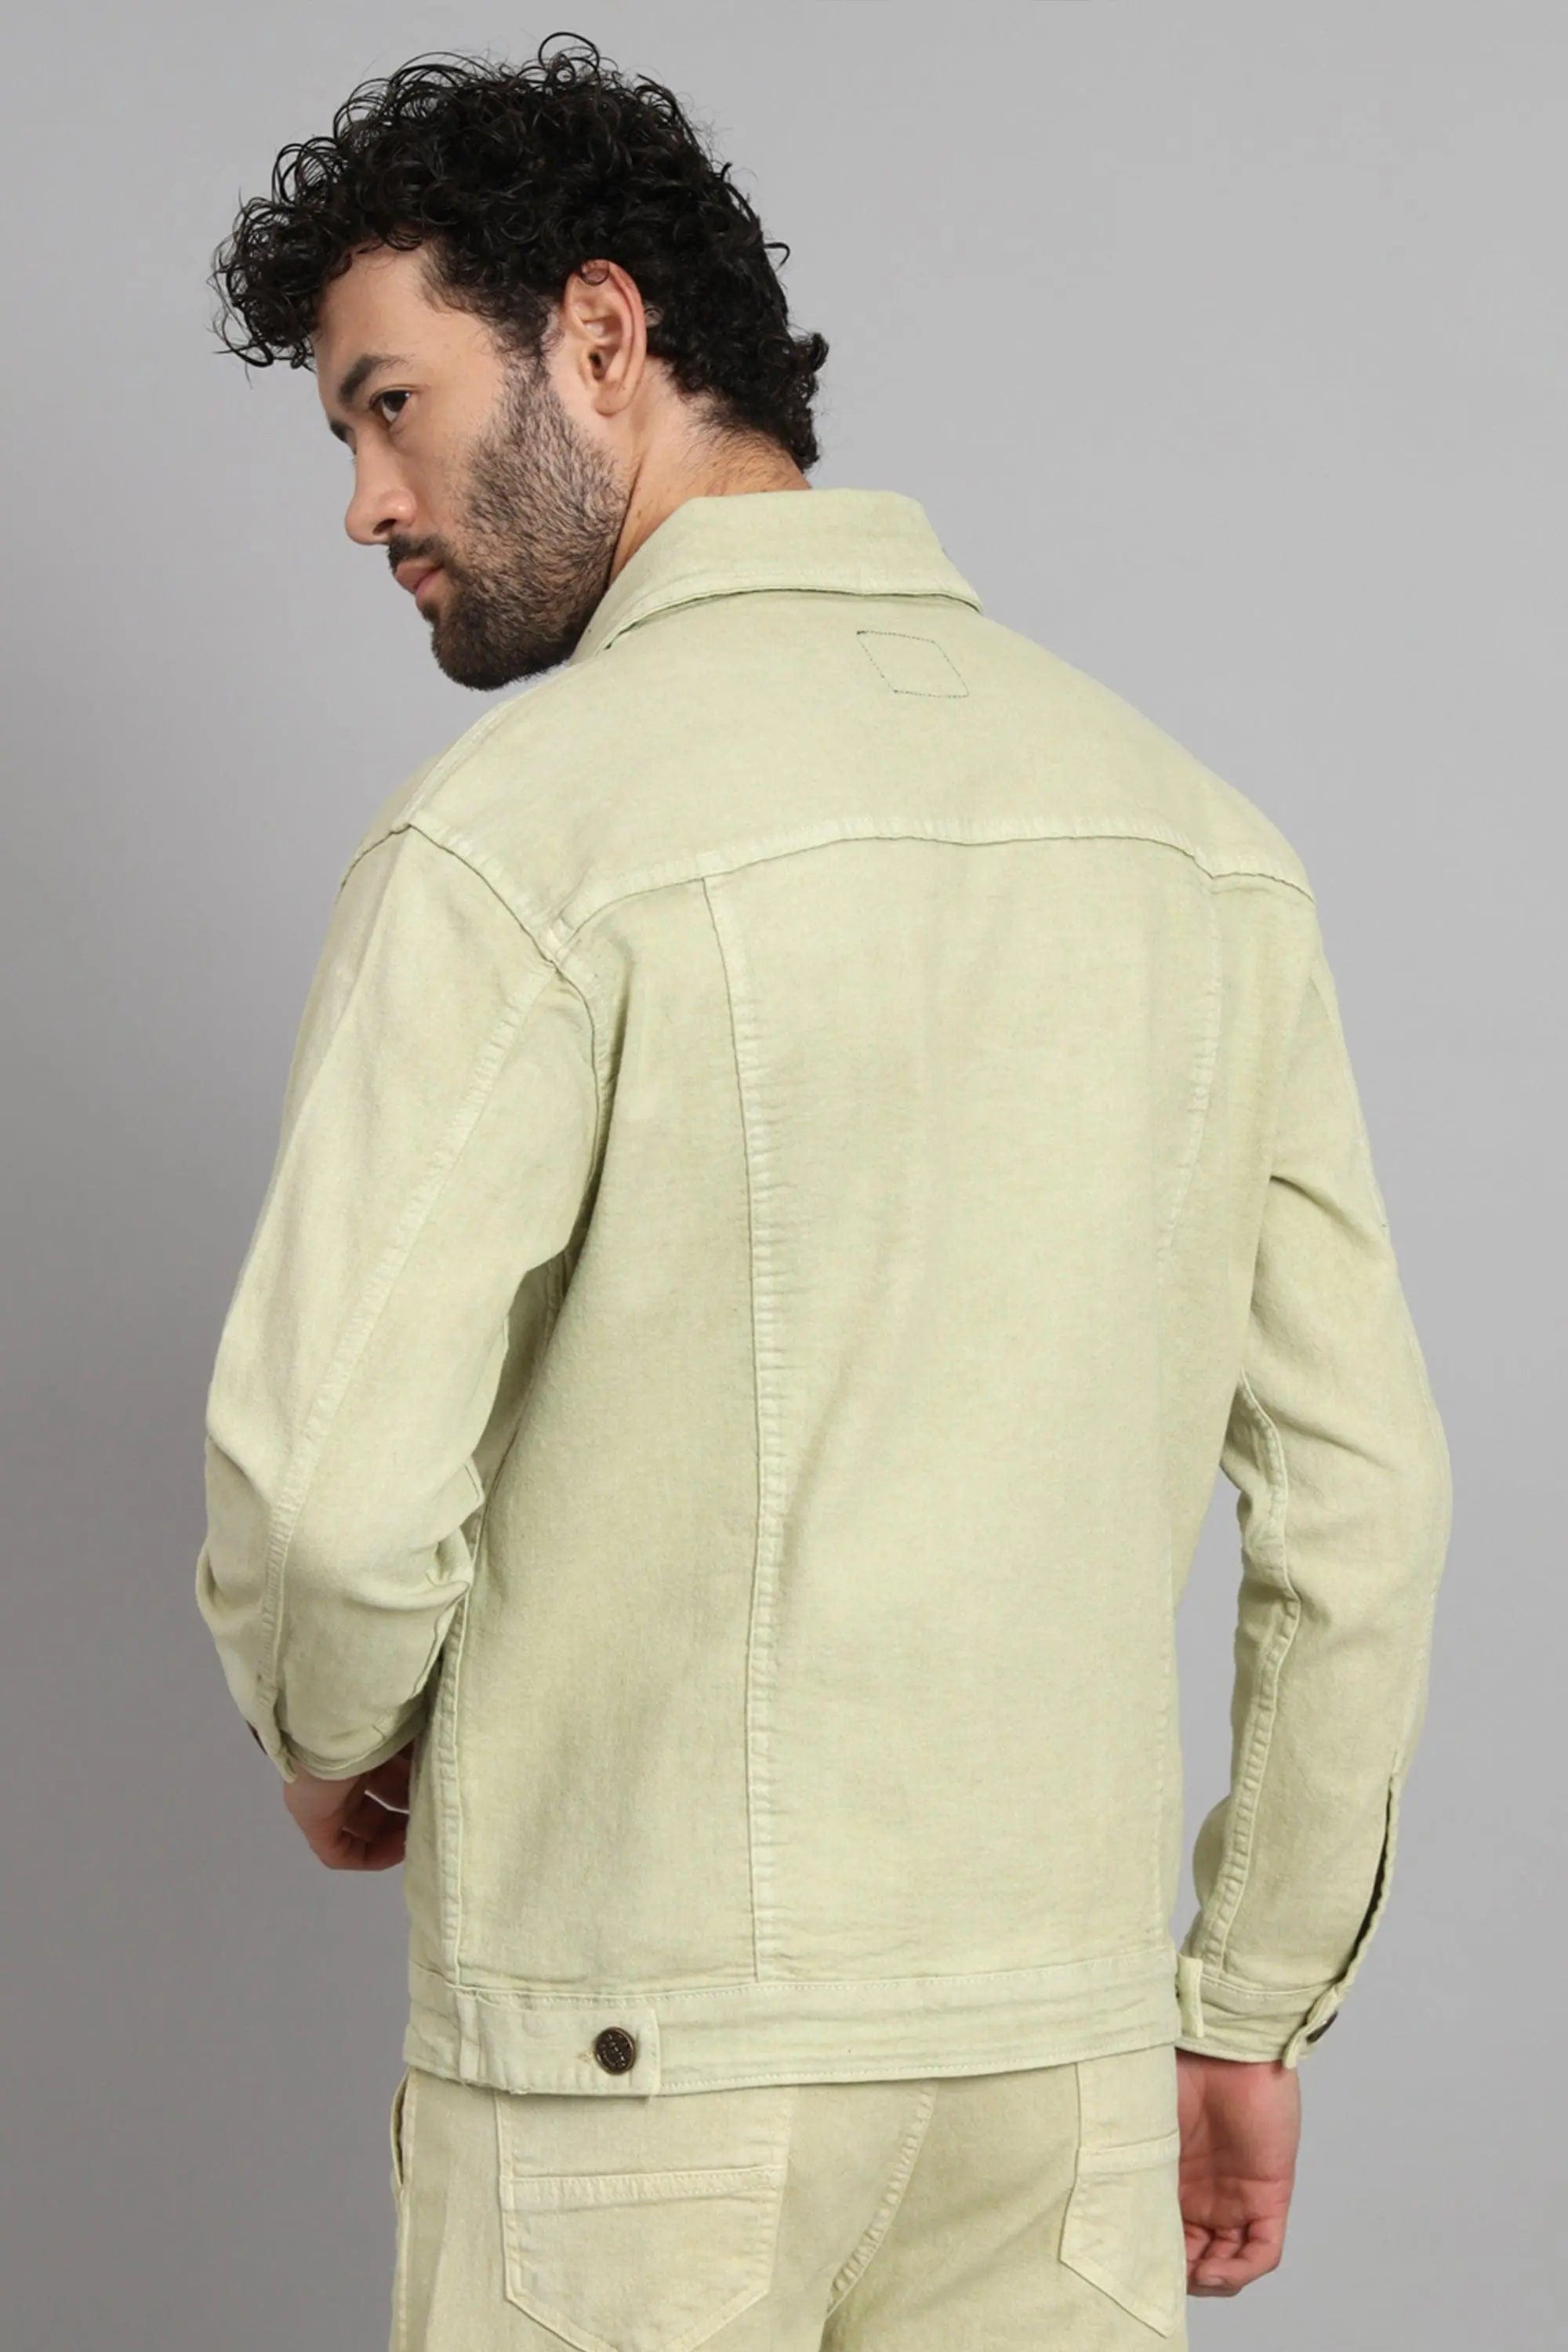 Men's Denim Trucker Jacket | Men's Coats & Jackets | Abercrombie.com